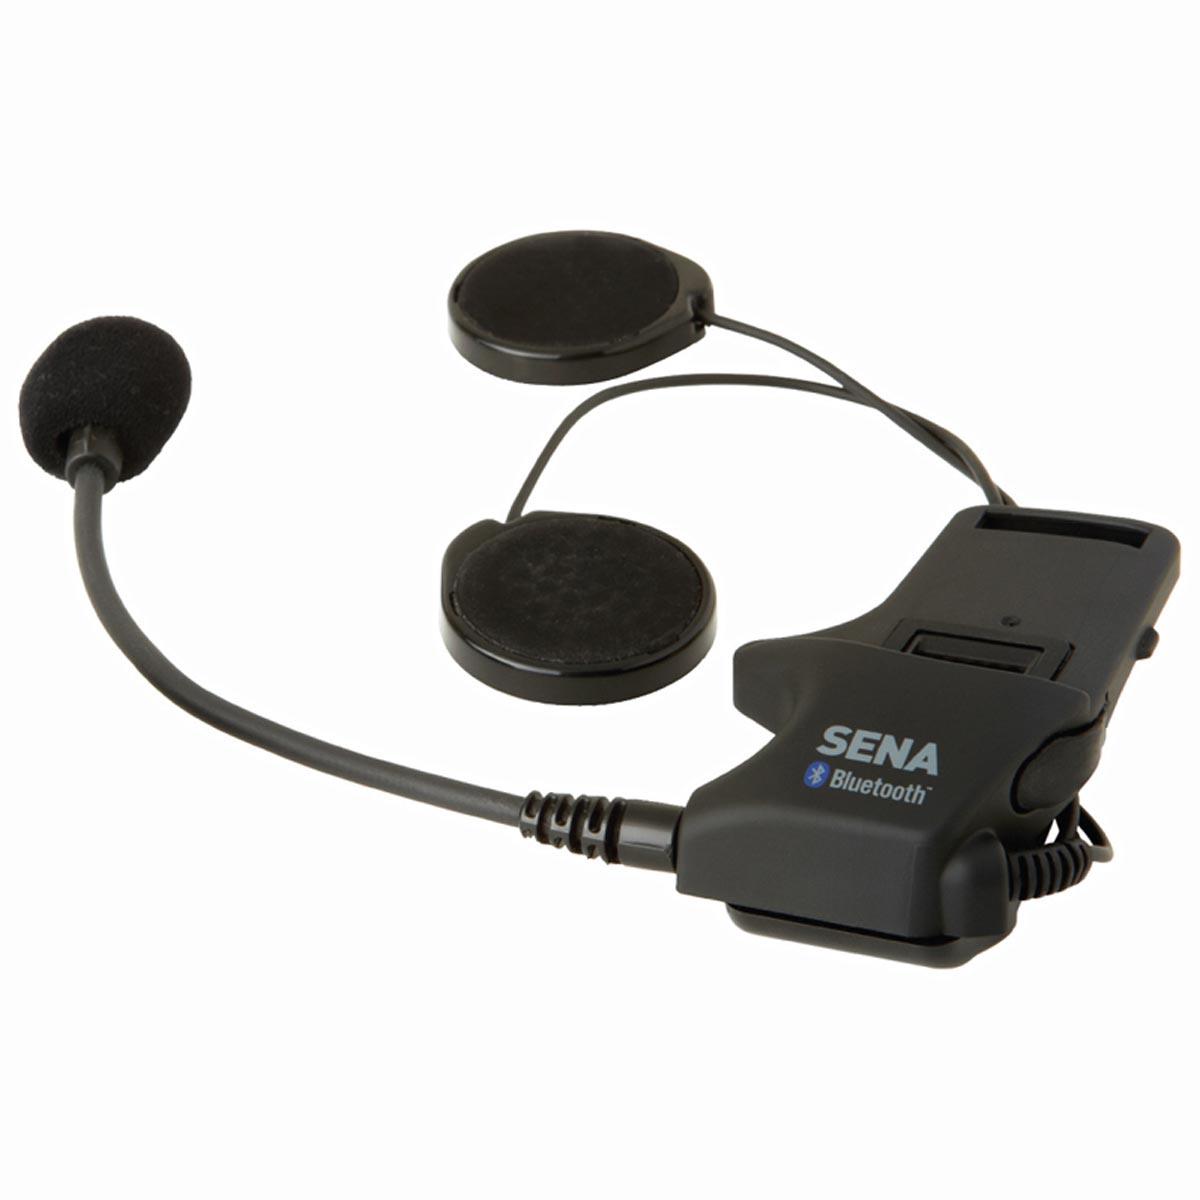 Sena part SMH-A0301 to replace a broken helmet headset clamp kit or add a helmet headset clamp kit to second helmet. Part fits Sena SMH-type intercoms with fixed boom mics.